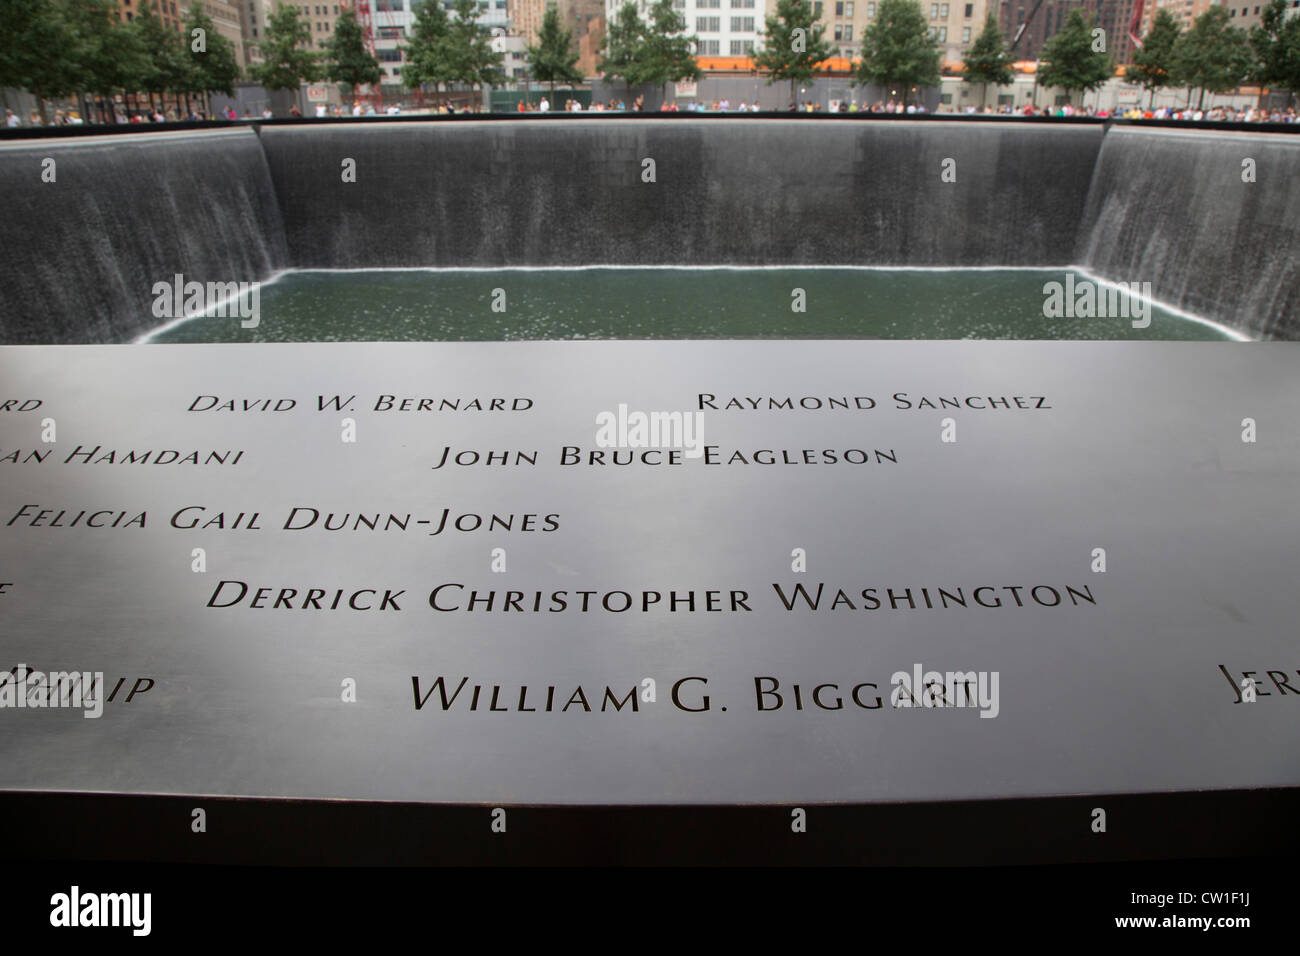 New York, NY - il 9/11 Memorial, che commemora il 11 settembre 2001 gli attacchi contro il World Trade Center e il Pentagono. Foto Stock